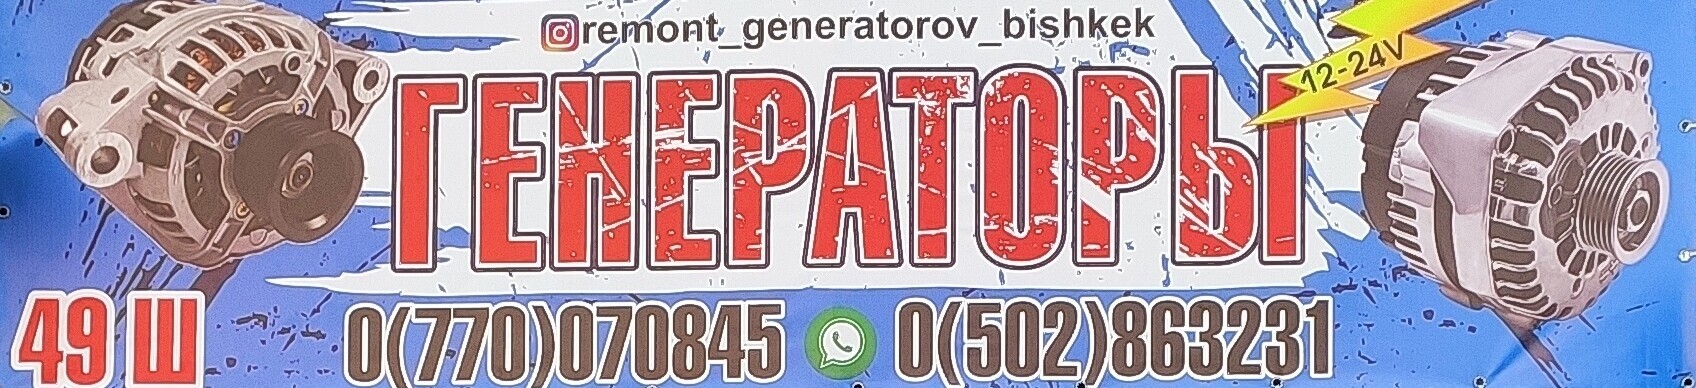 Ремонт генераторов-генератора.Запчасти ➤ Кыргызстан ᐉ Бизнес-профиль компании на lalafo.kg